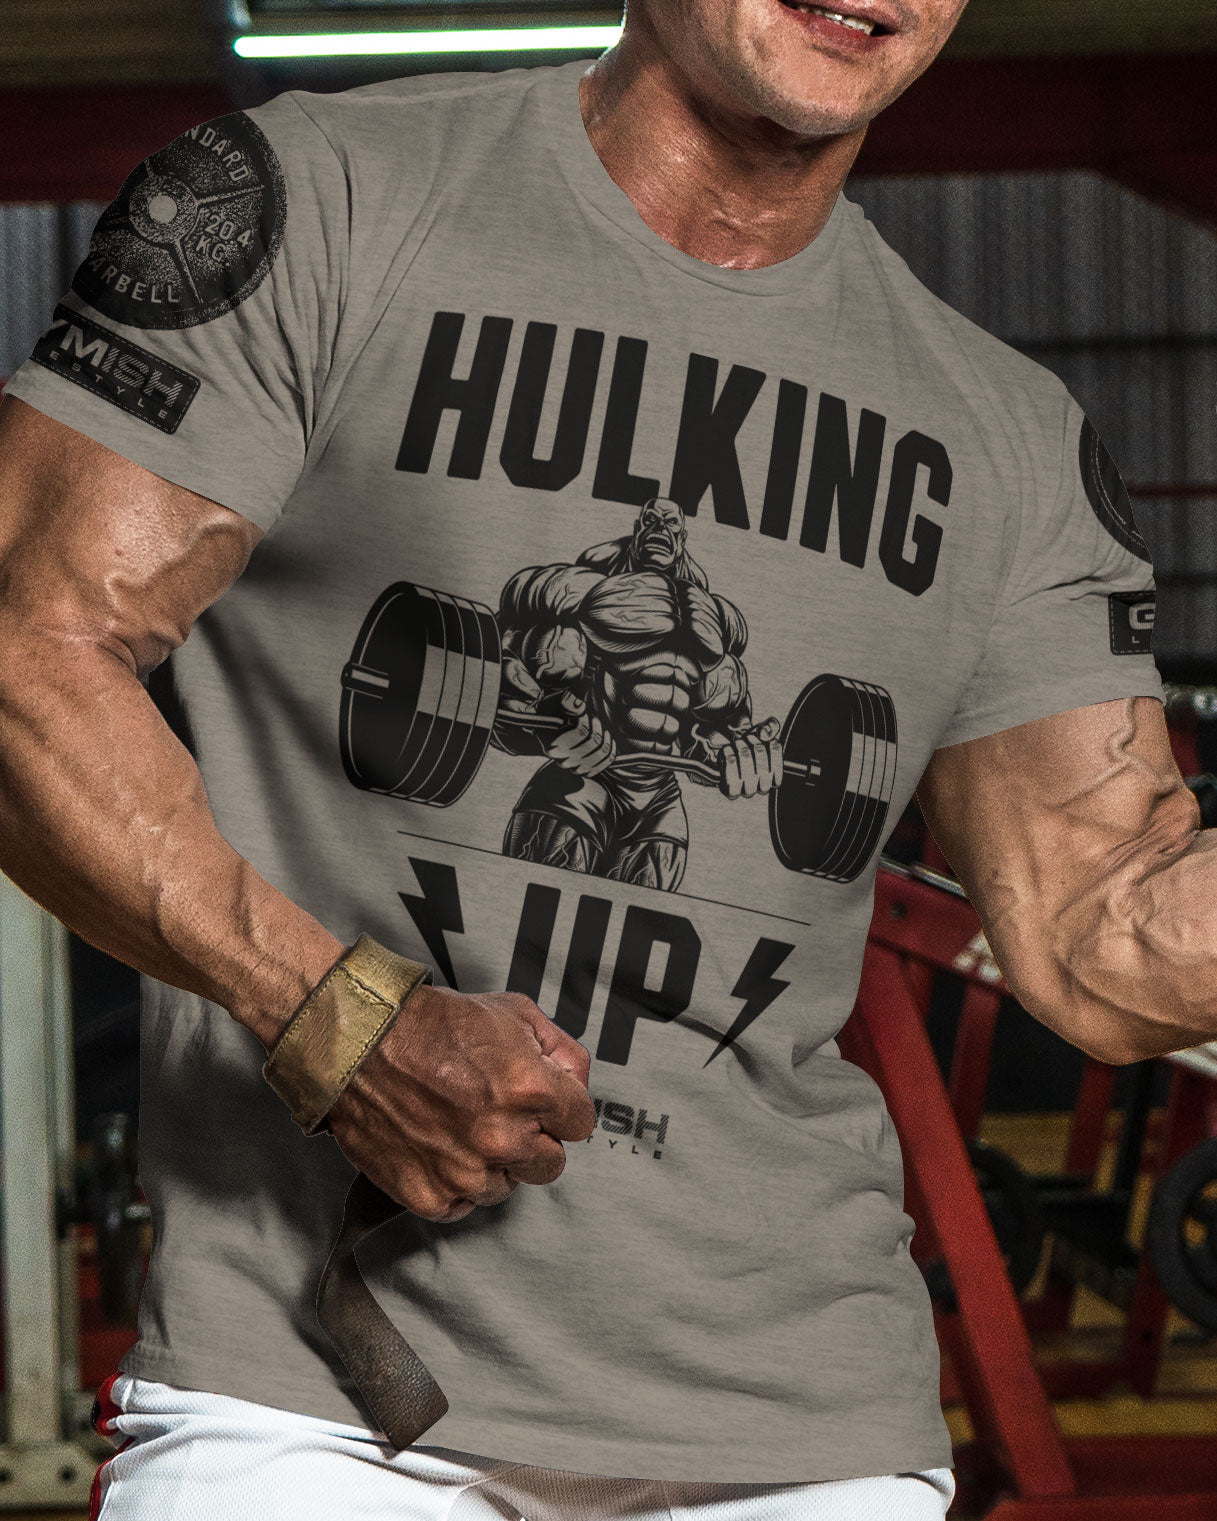 037. Hulking Up Workout T-Shirt